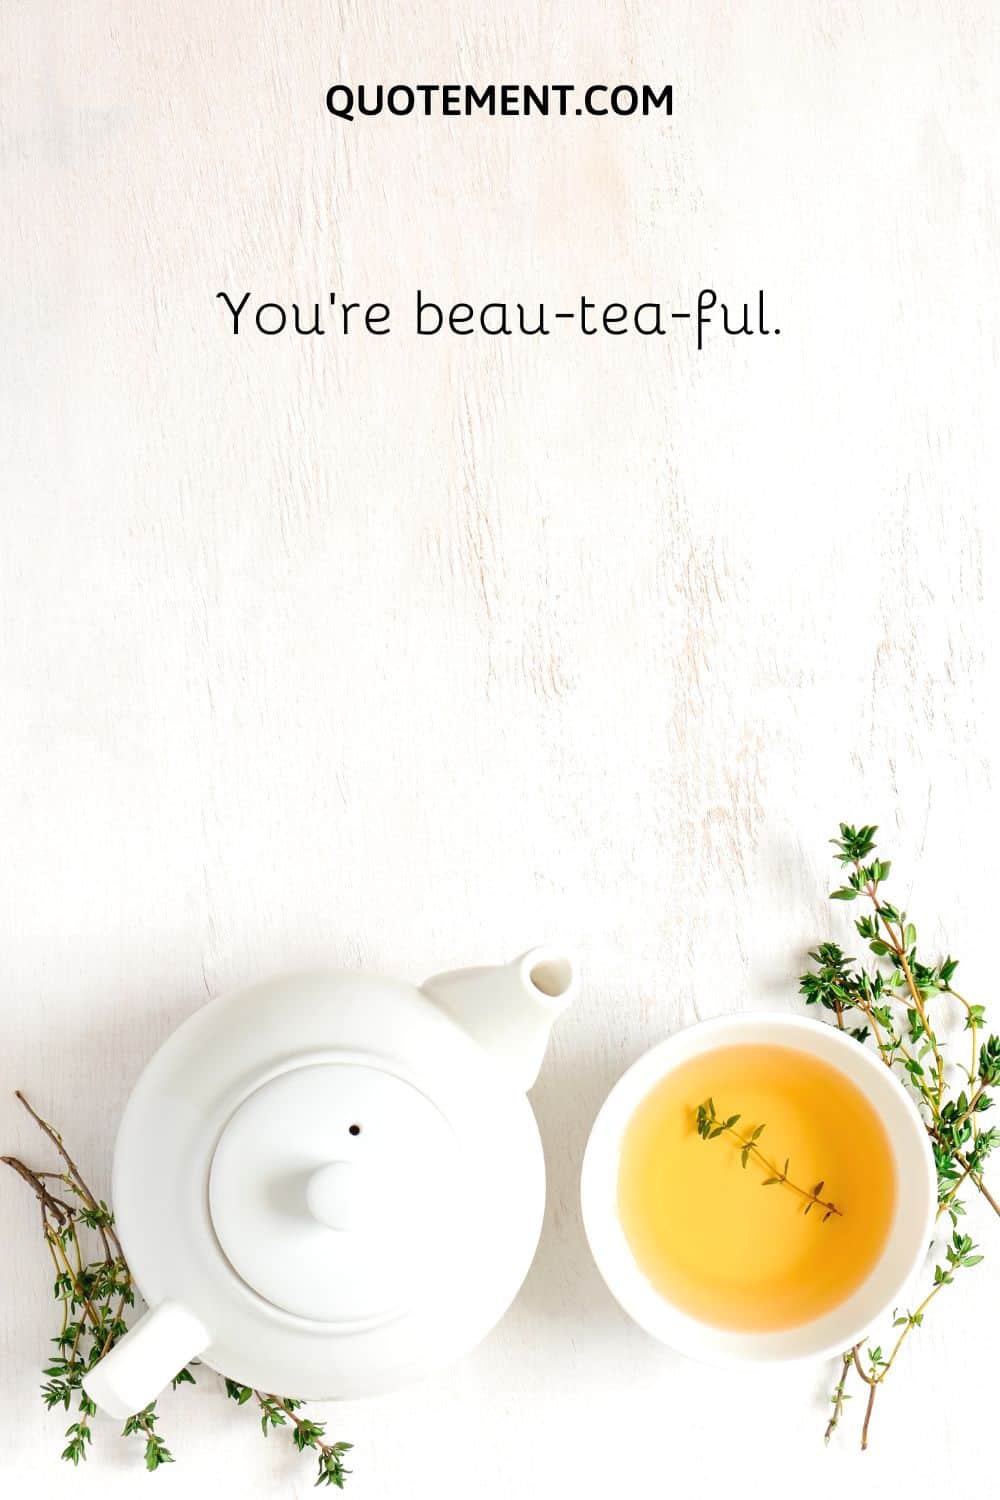 You’re beau-tea-ful.